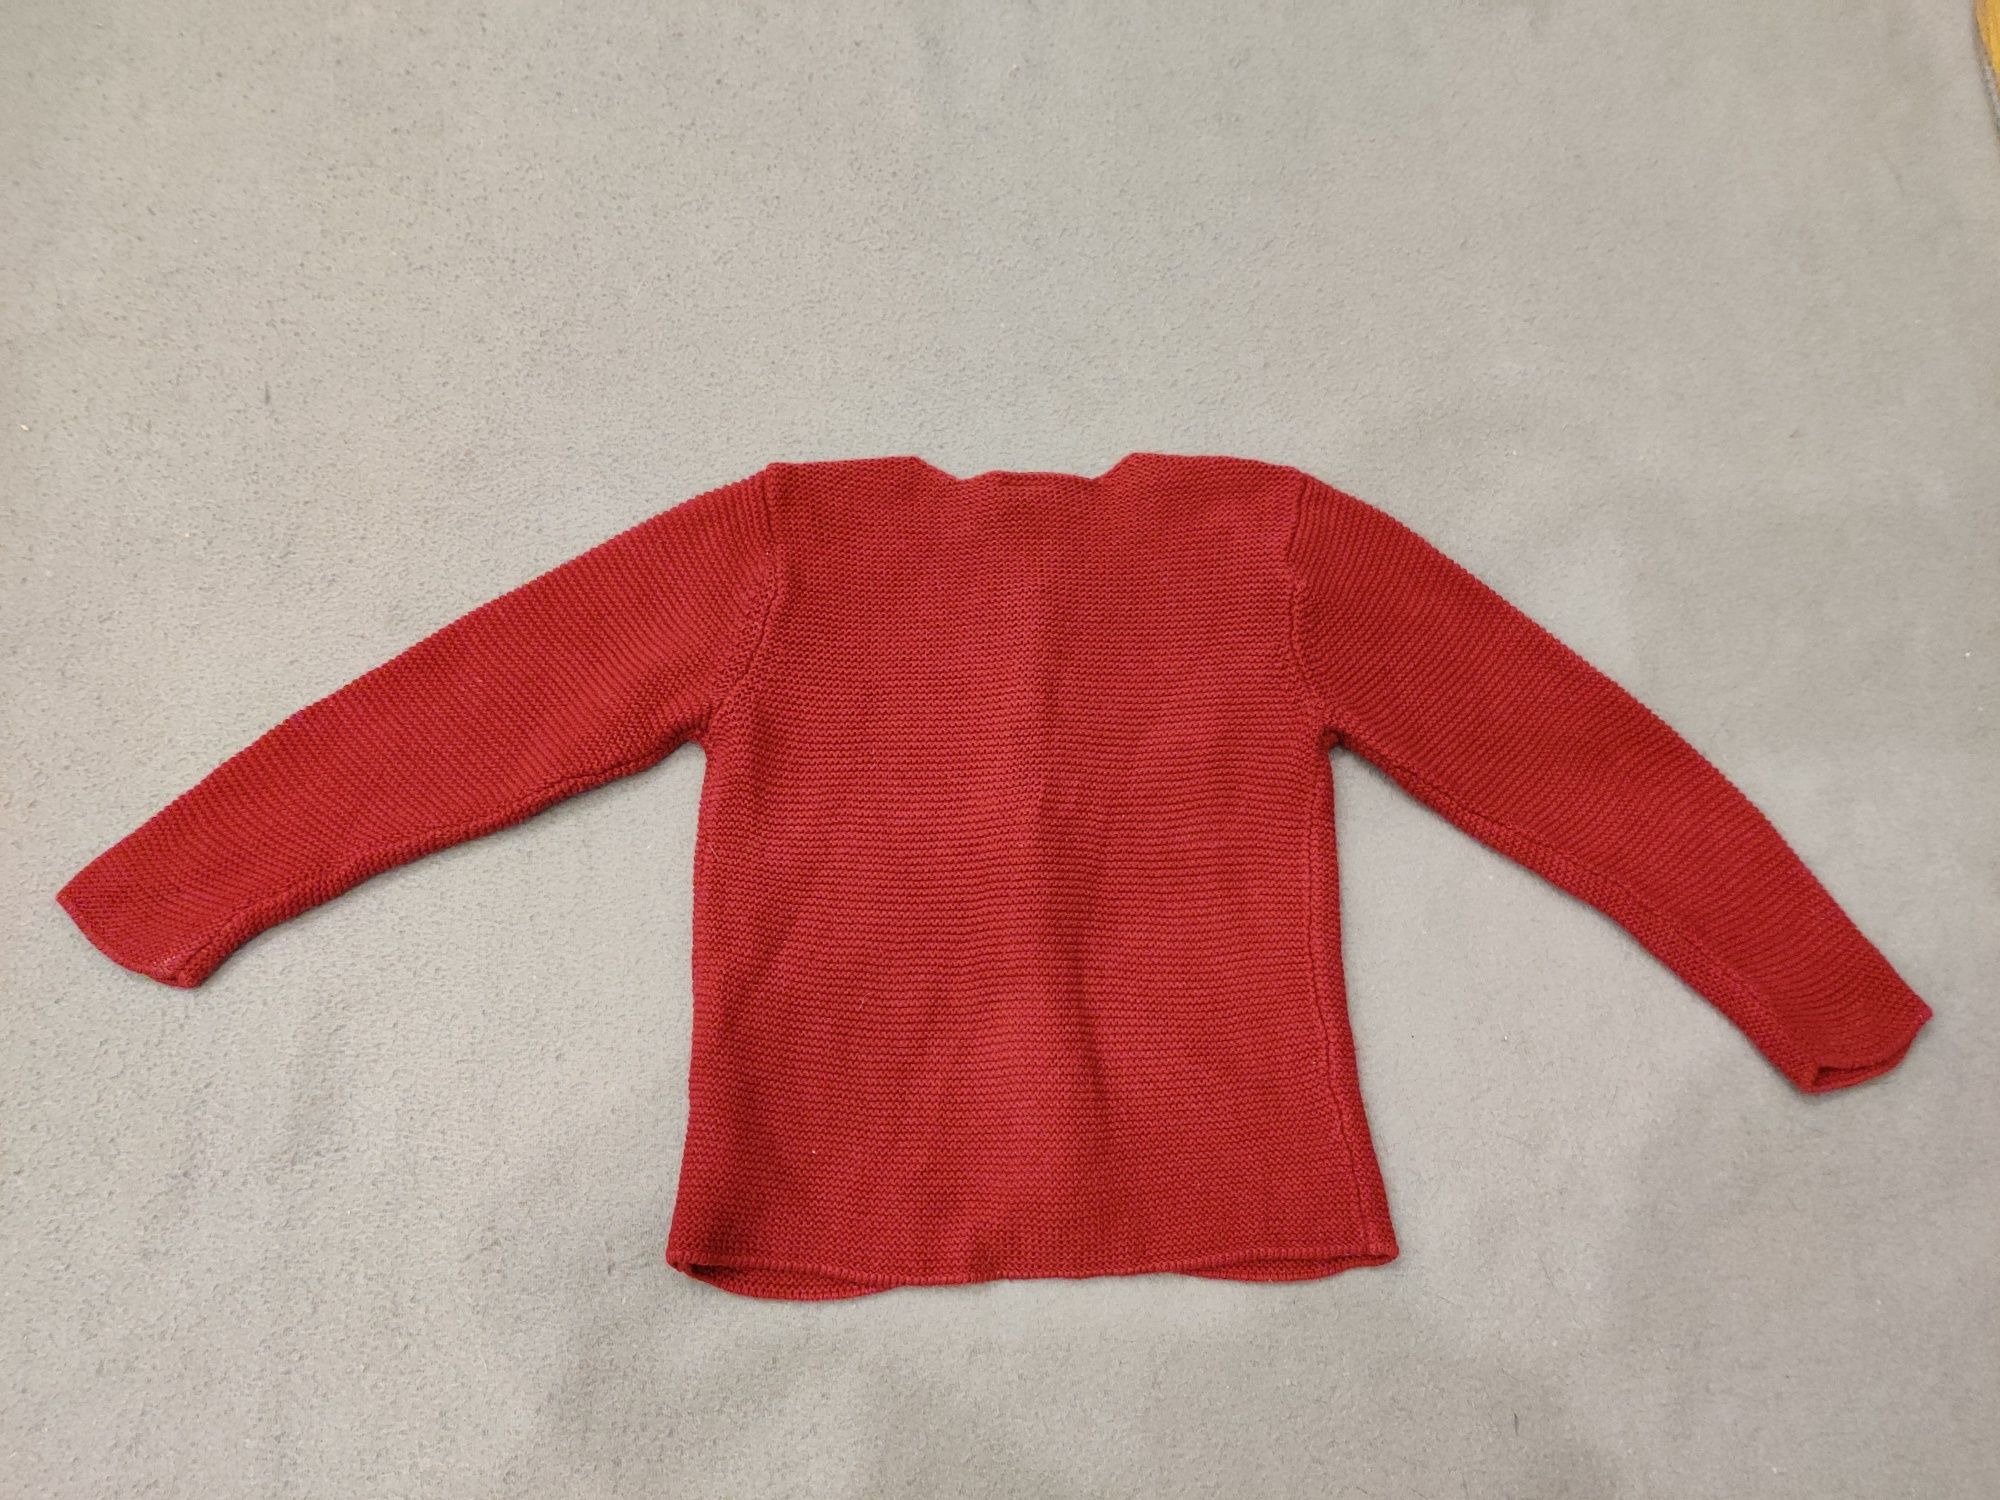 Buraczkowy bawełniany kardigan H&M 92 sweterek rozpinany dziewczęcy